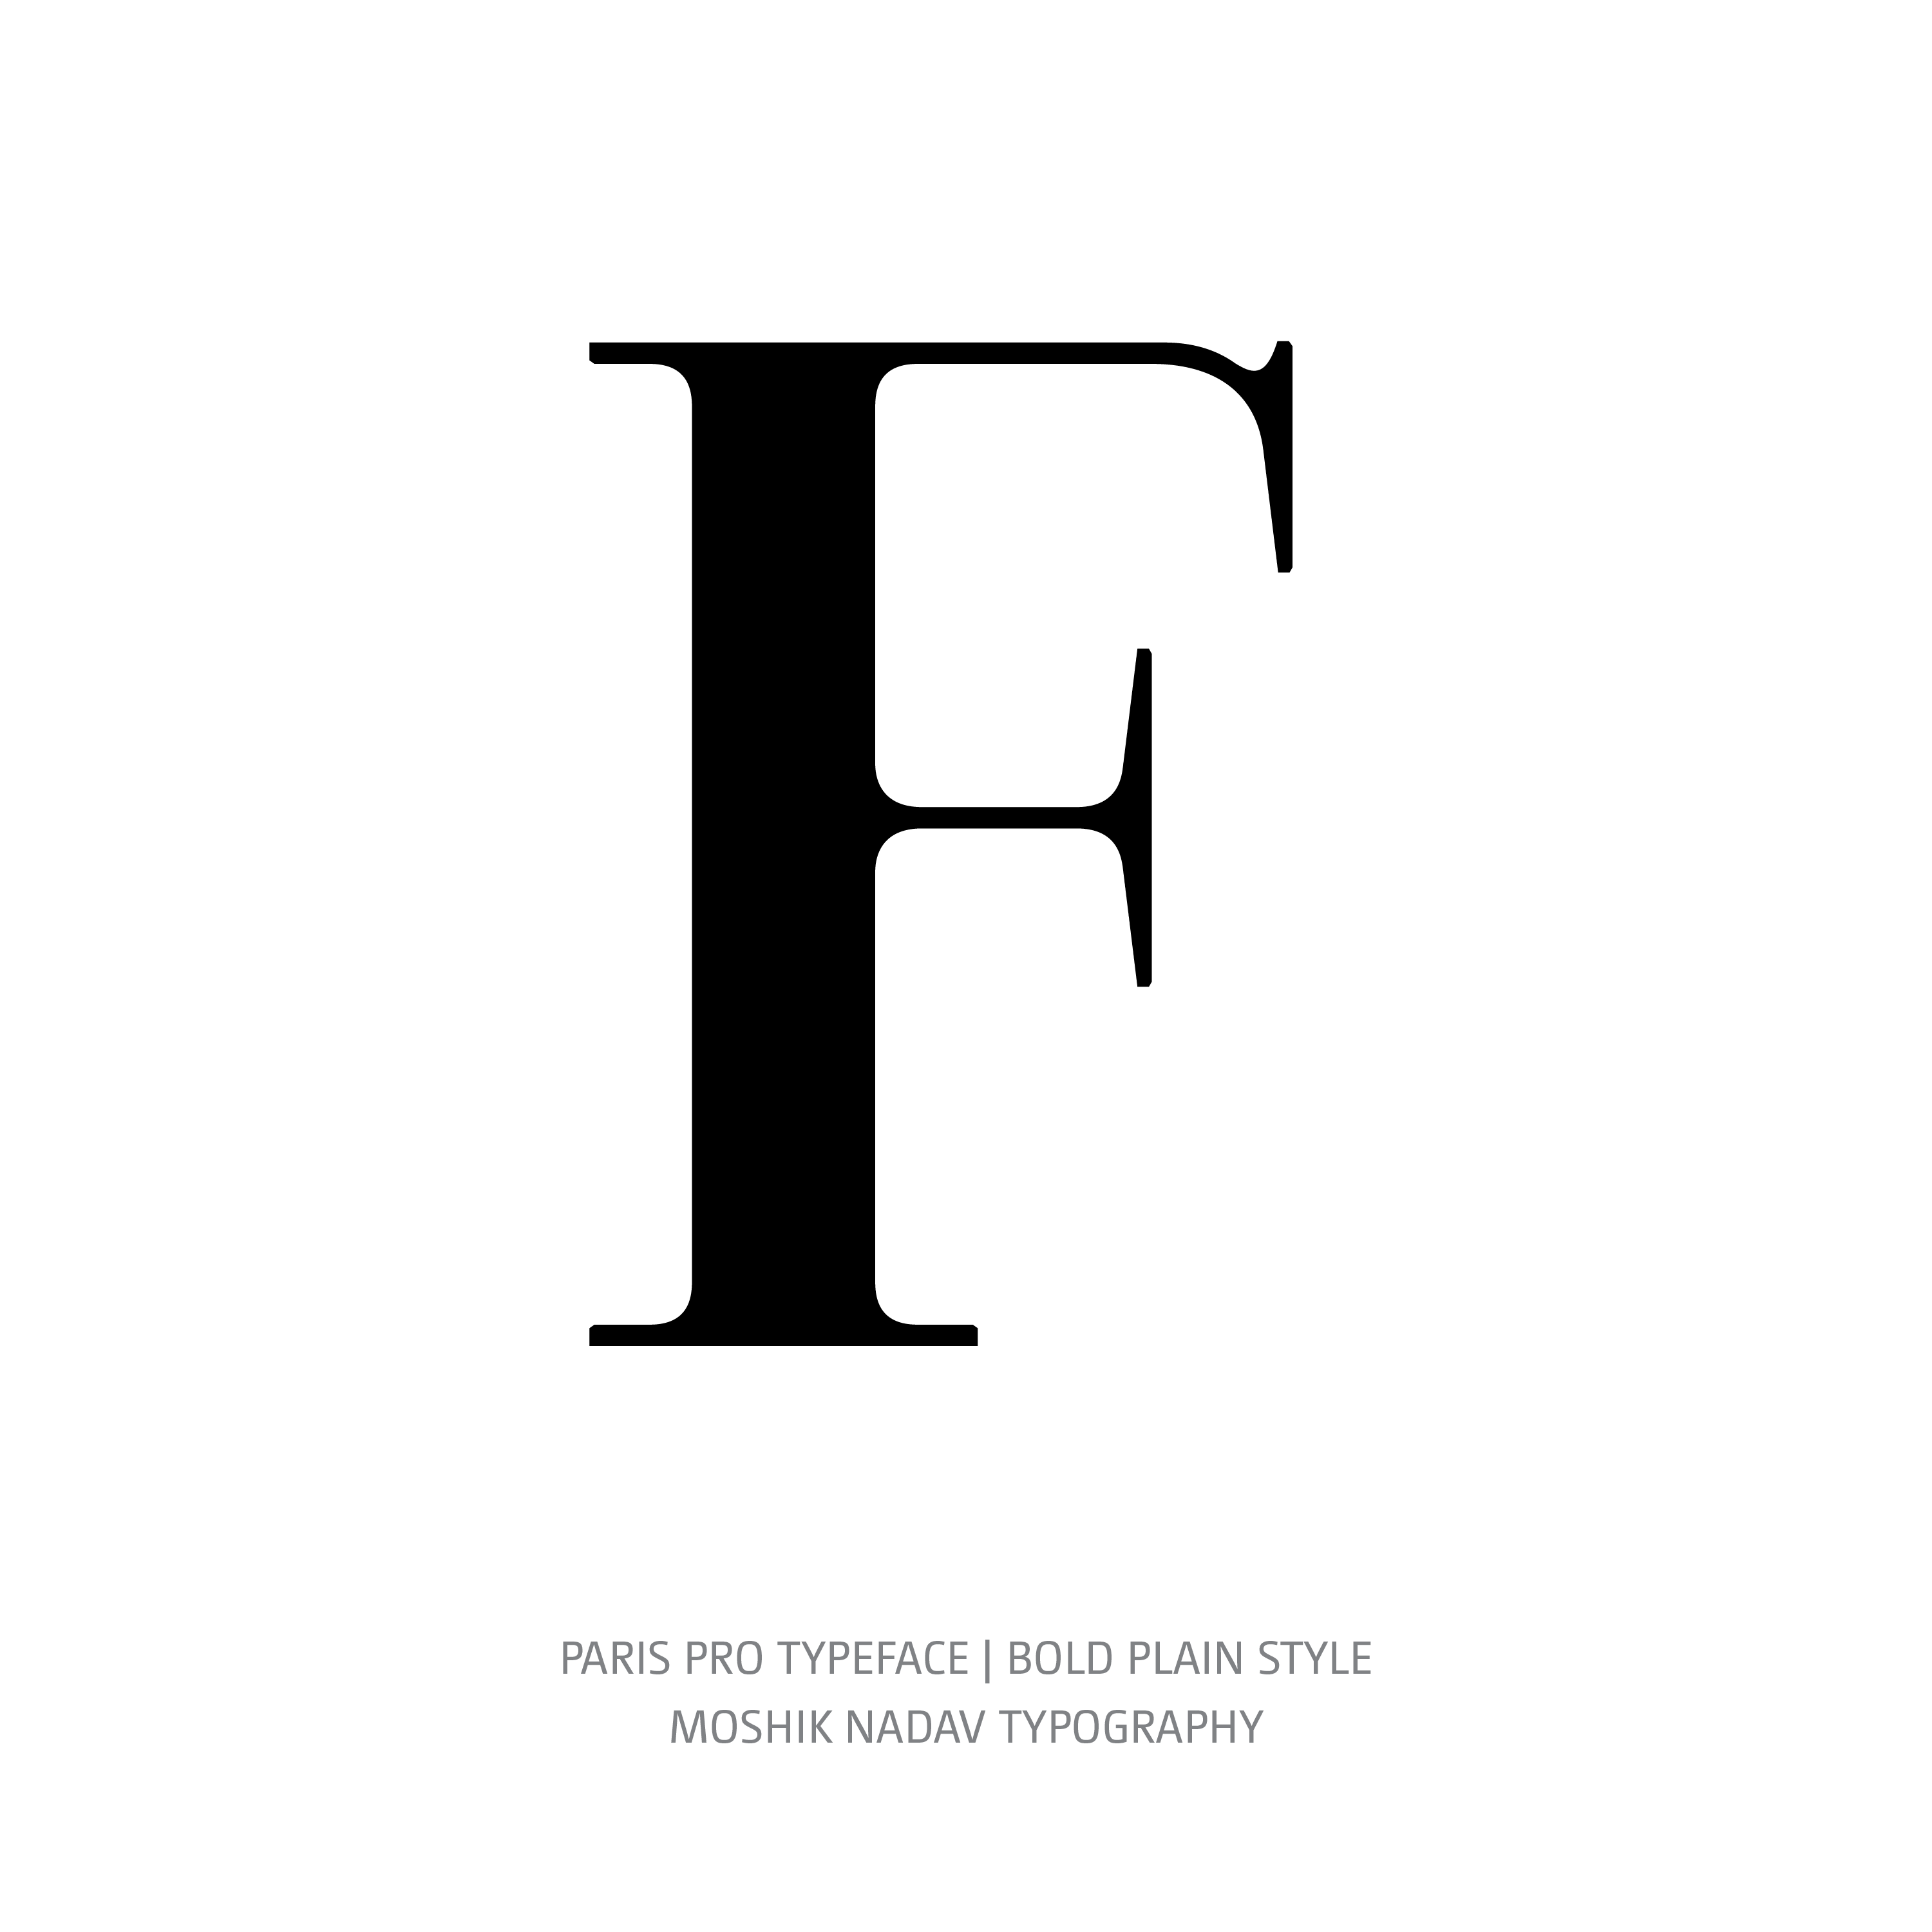 Paris Pro Typeface Bold Plain F